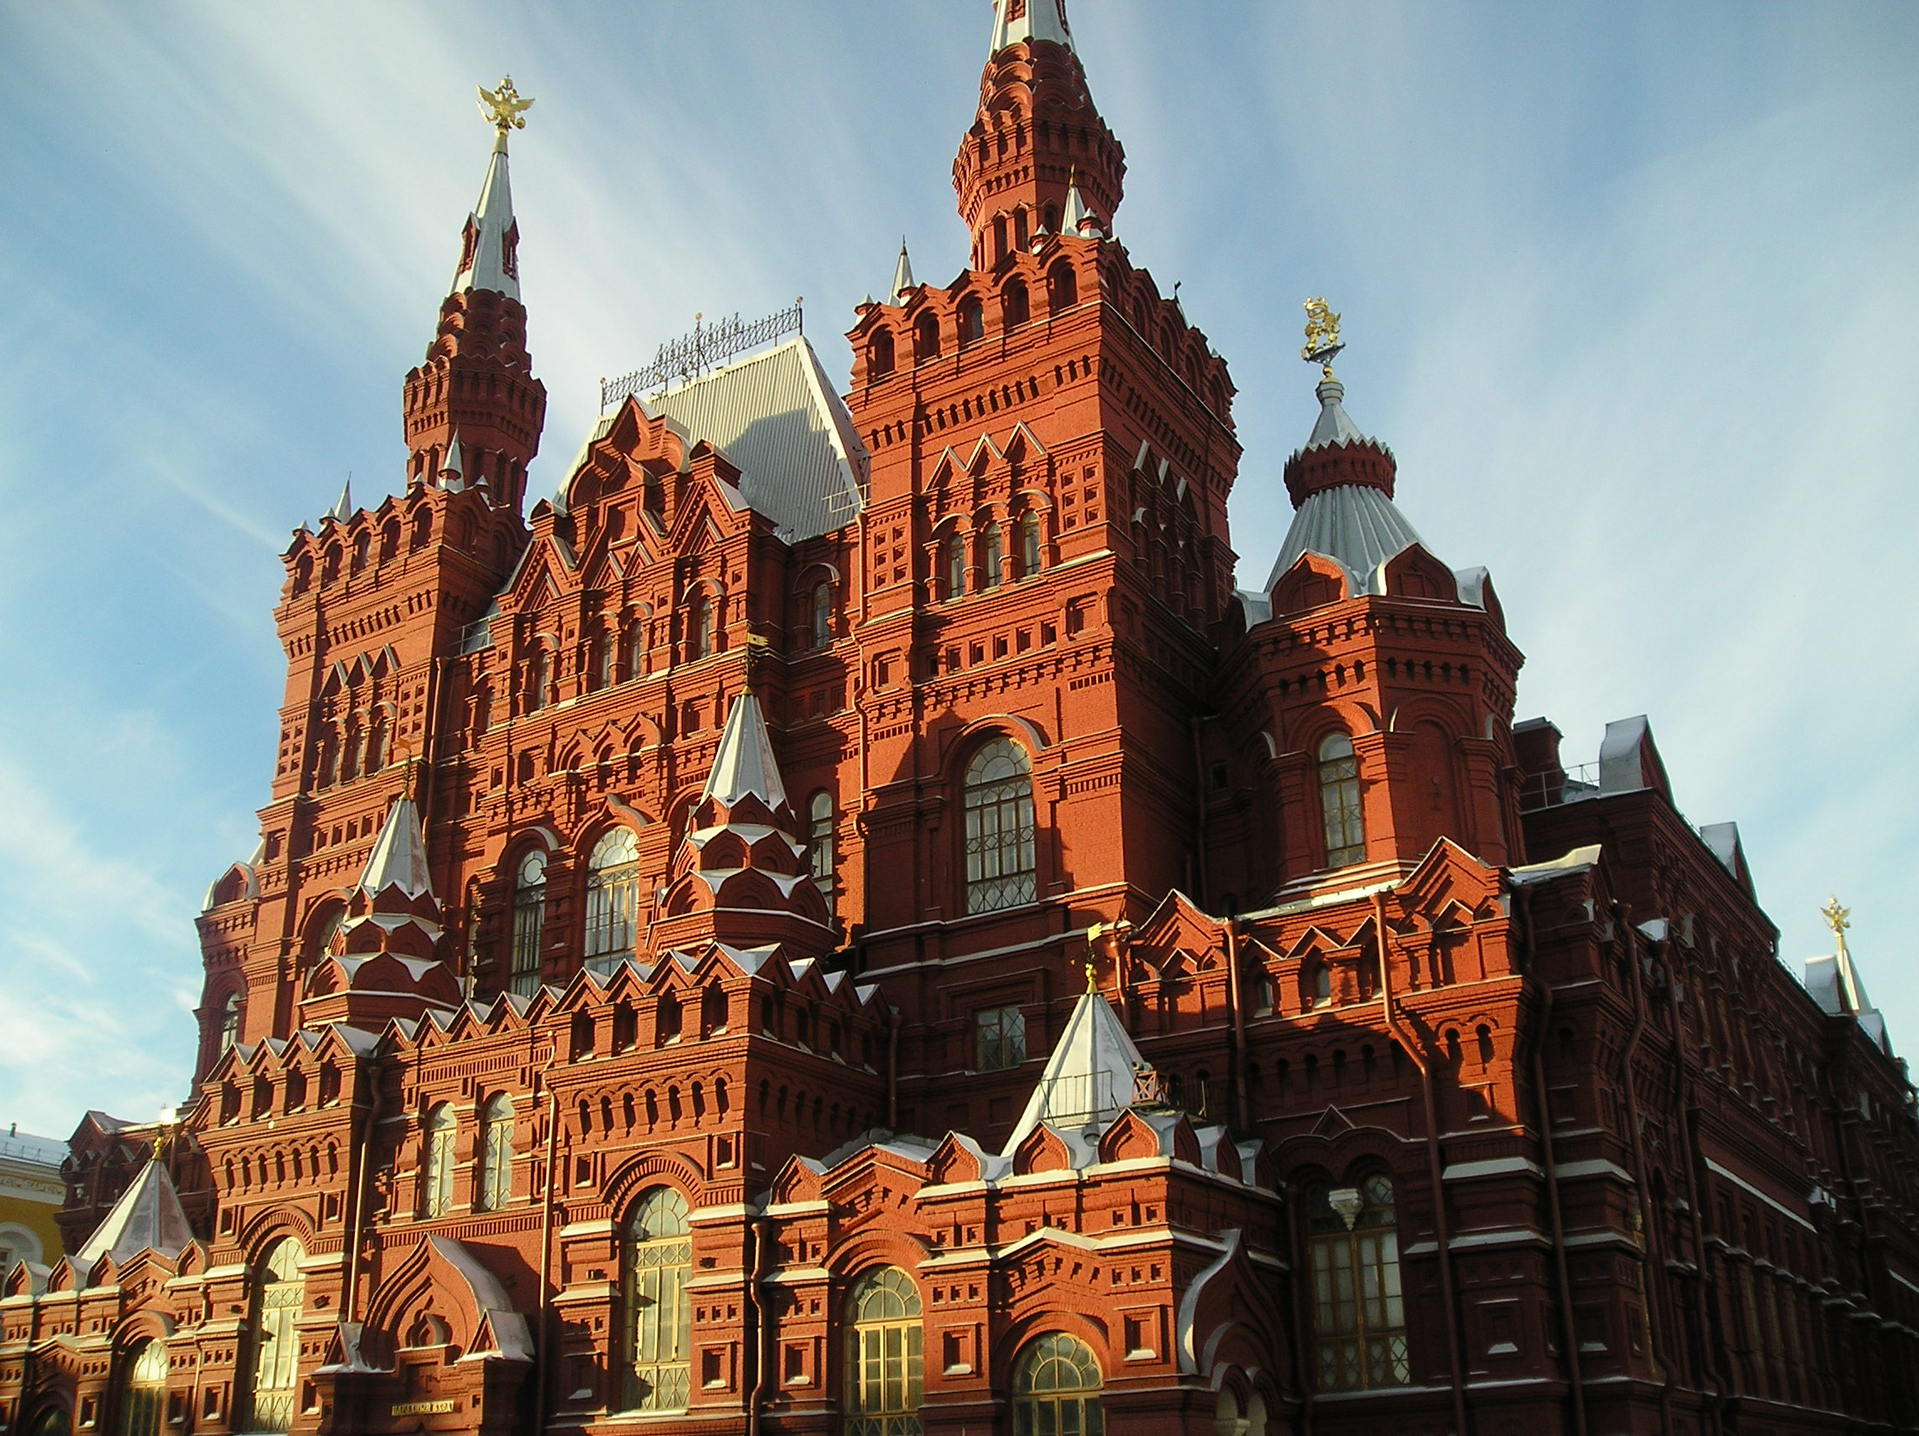 Исторический музей в Москве